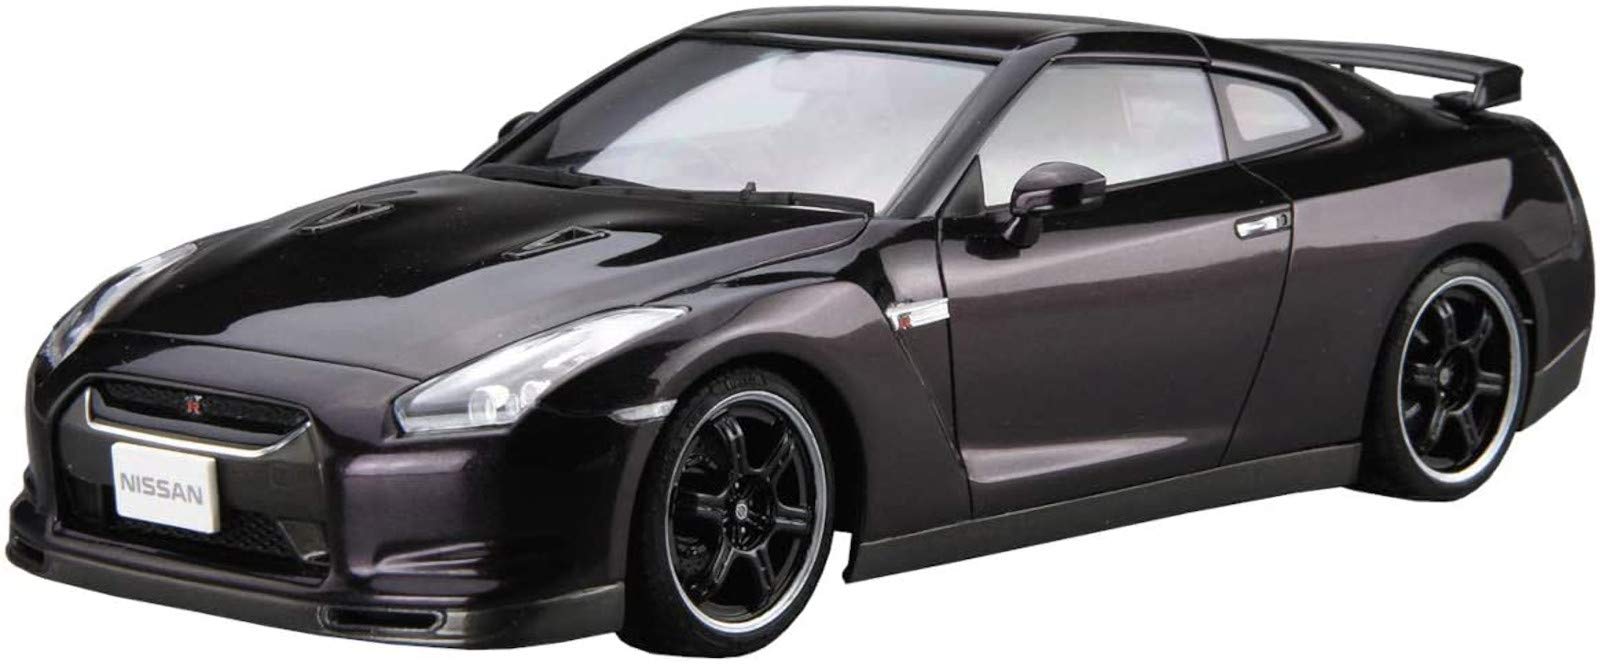 AOSHIMA le modèle de voiture 1/24 Nissan R35 Gt-R Spec-V '09 modèle en plastique